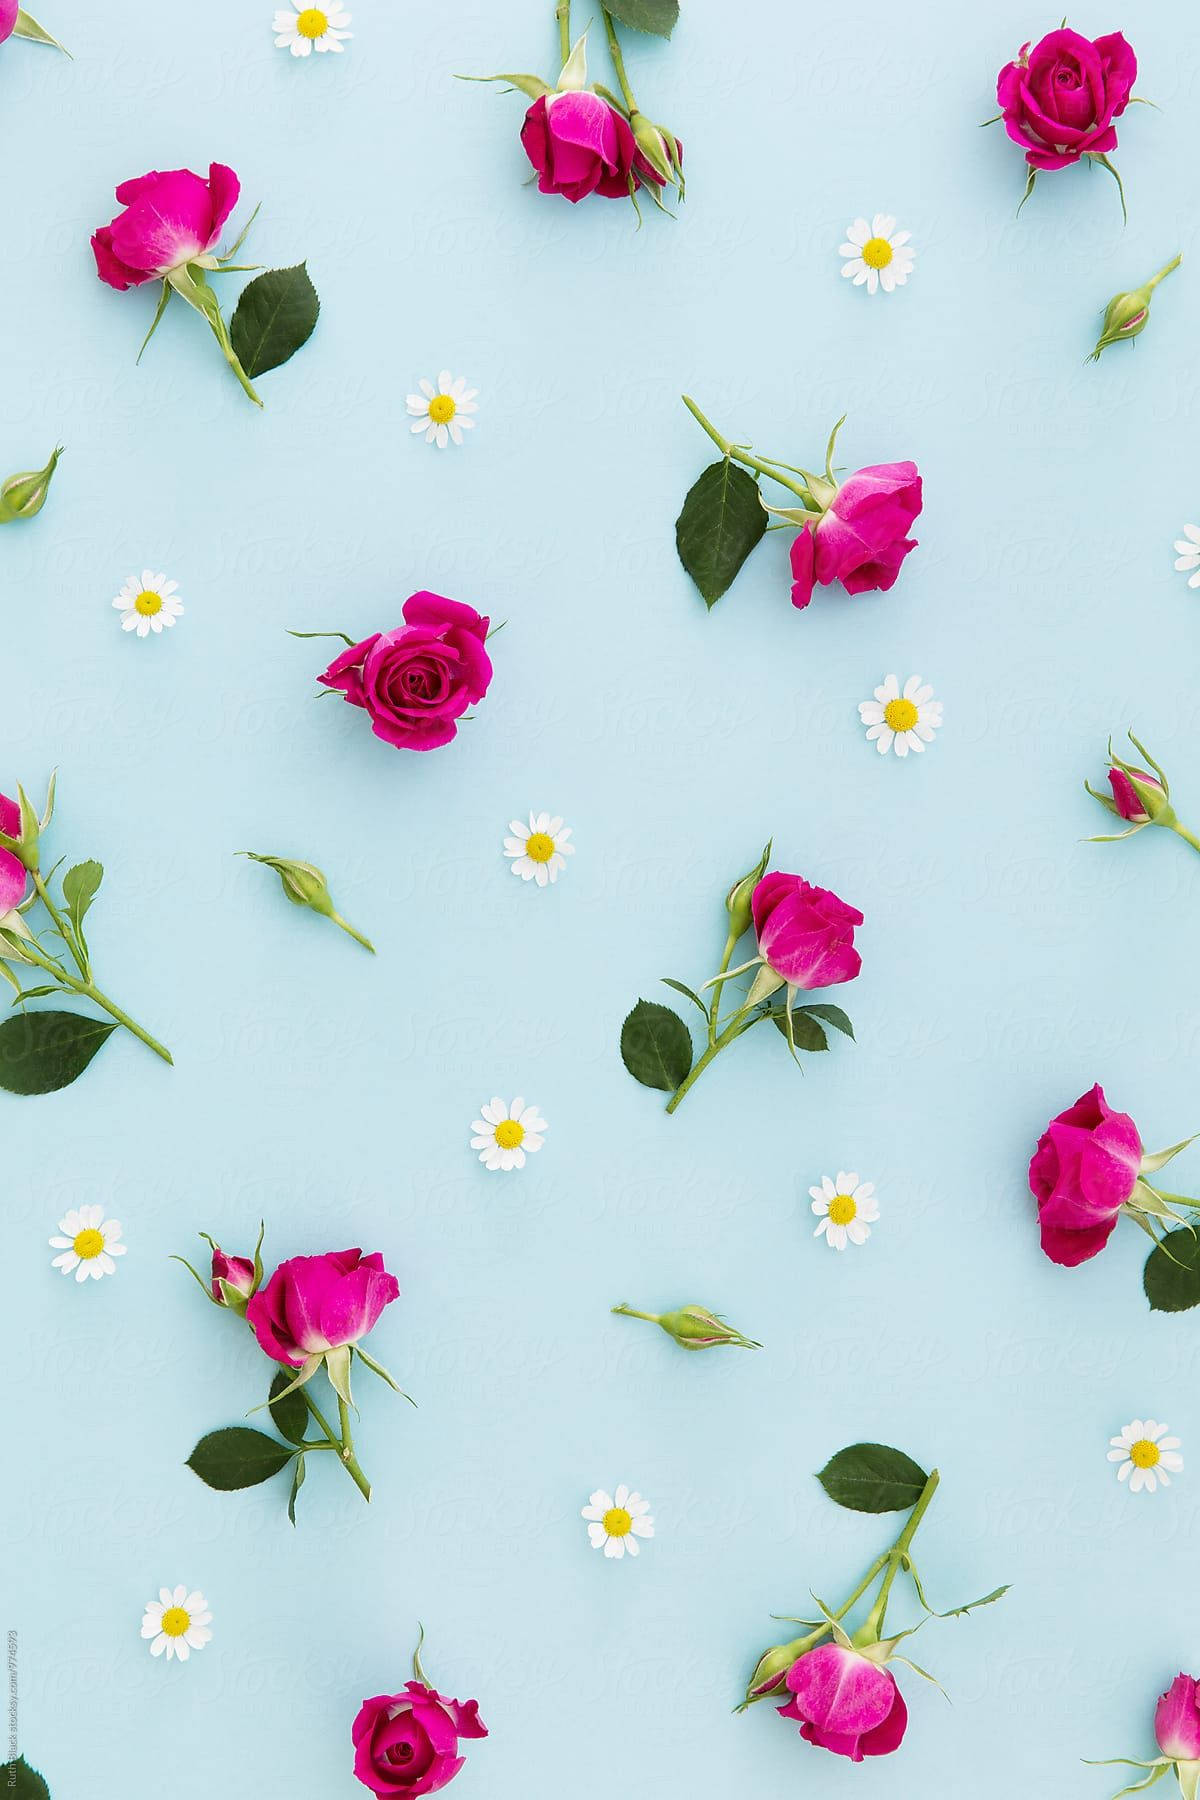 Caption: Vibrantly patterned floral backdrop Wallpaper